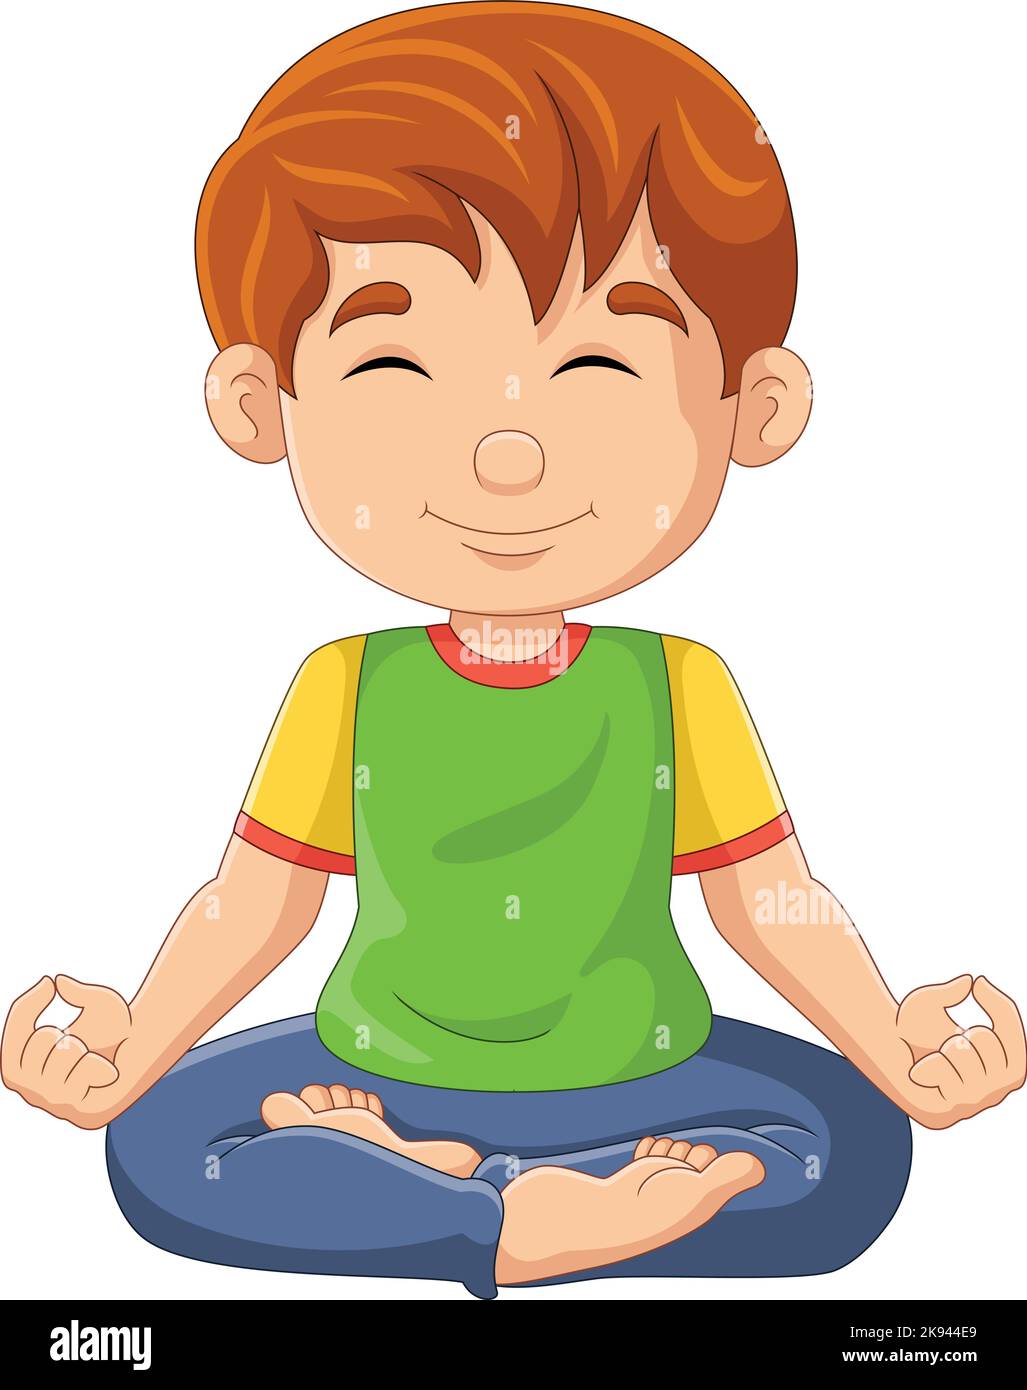 Dessin animé petit garçon faisant la position de yoga de lotus Illustration de Vecteur